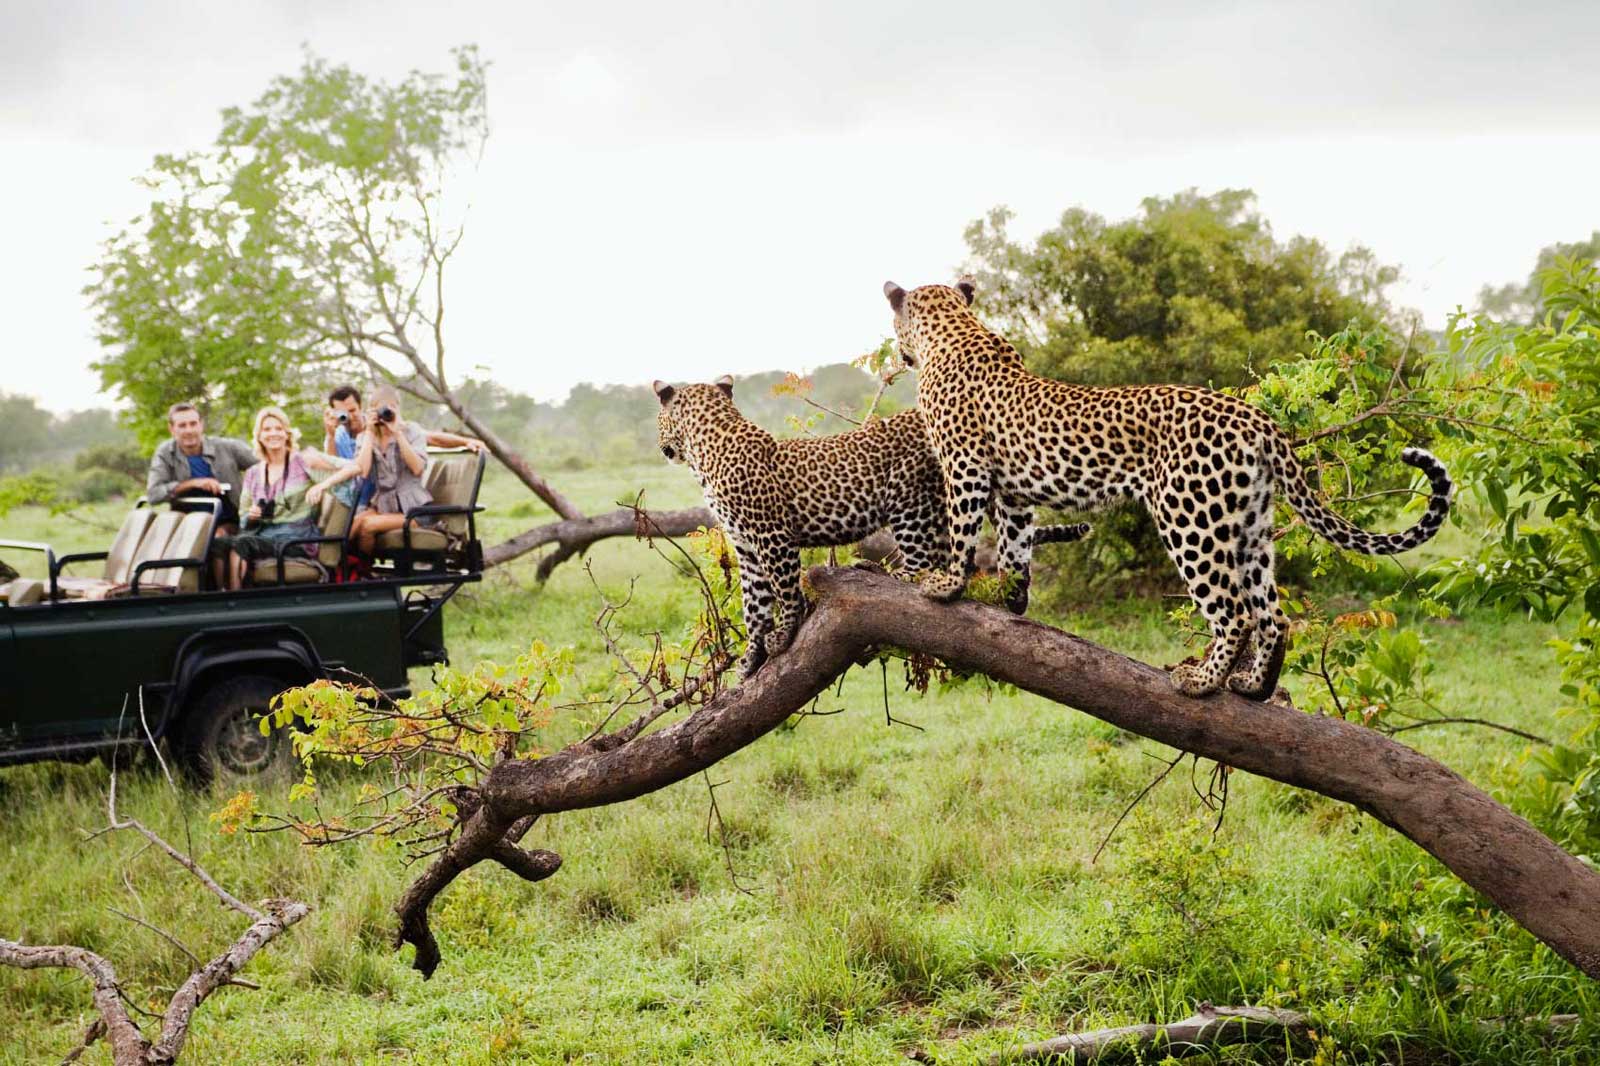 safari parc kruger afrique du sud